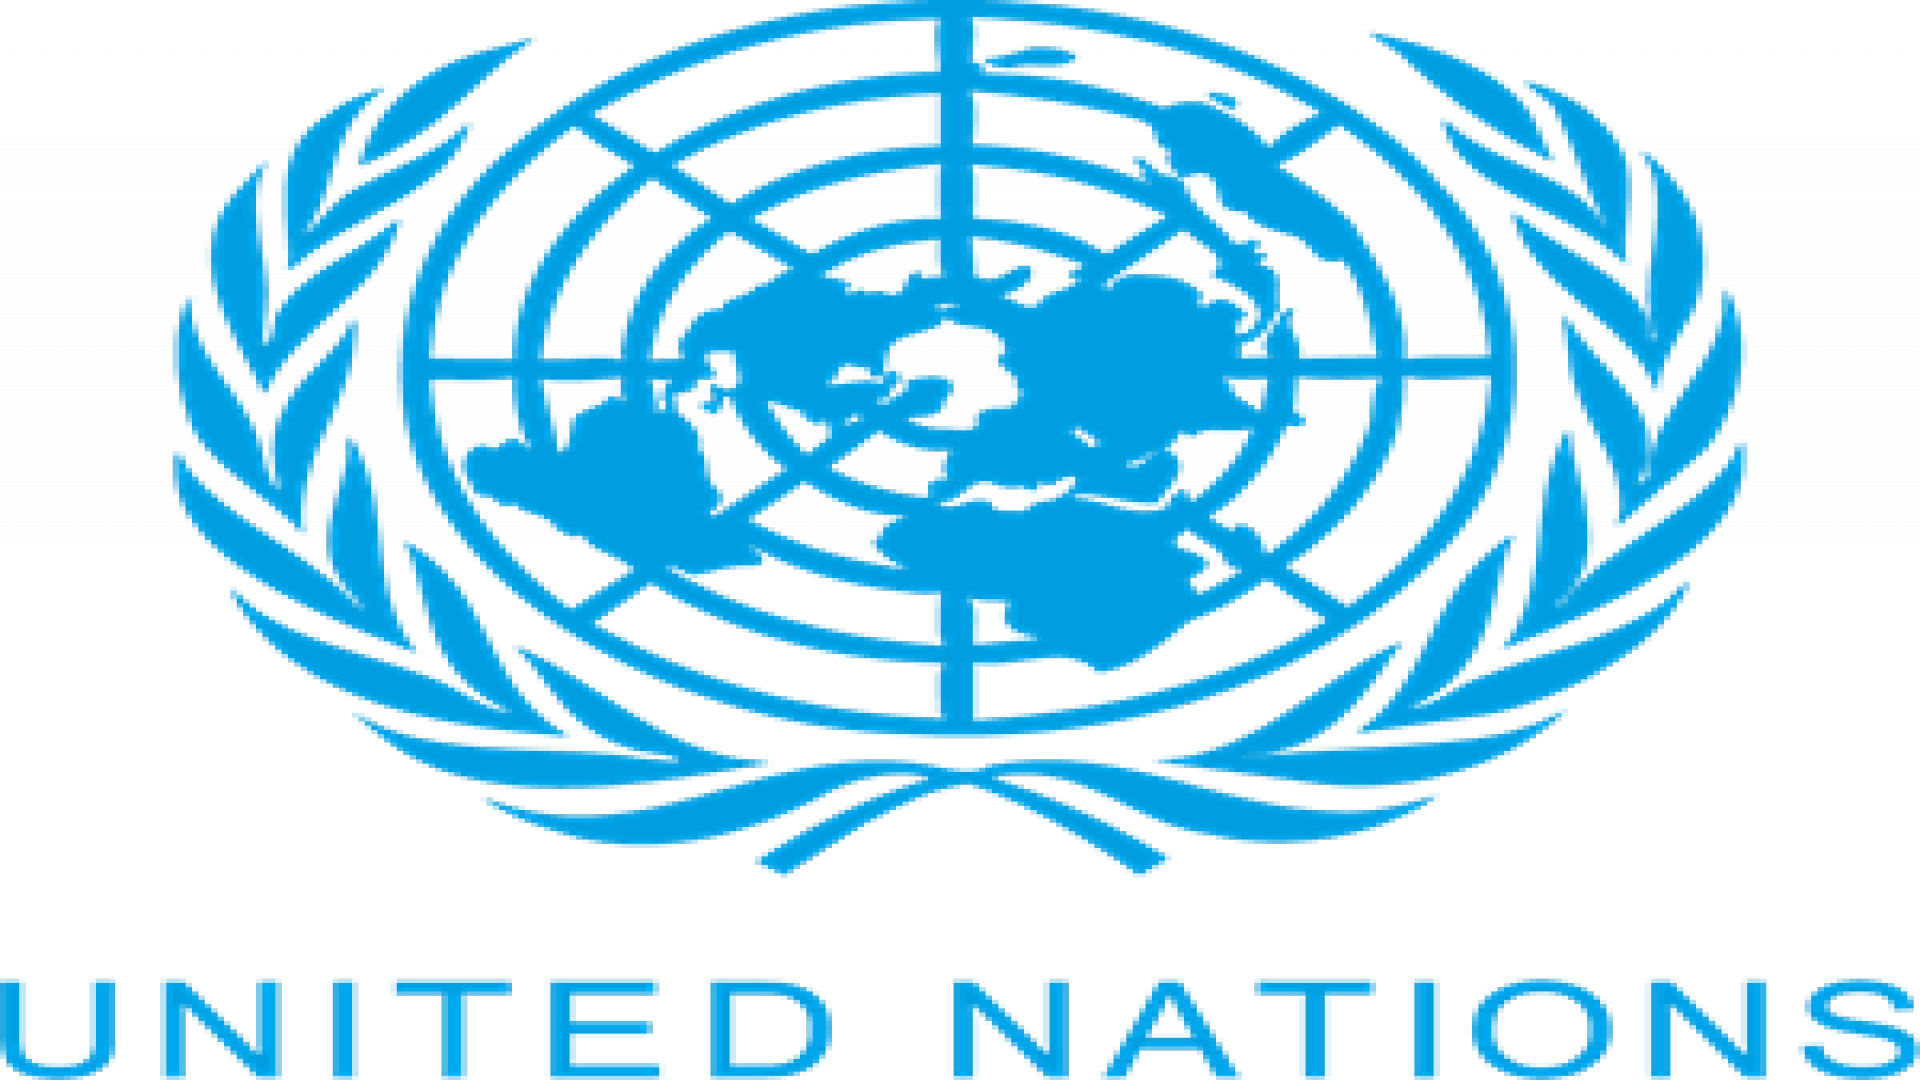 United Nations Flag Transparent Images